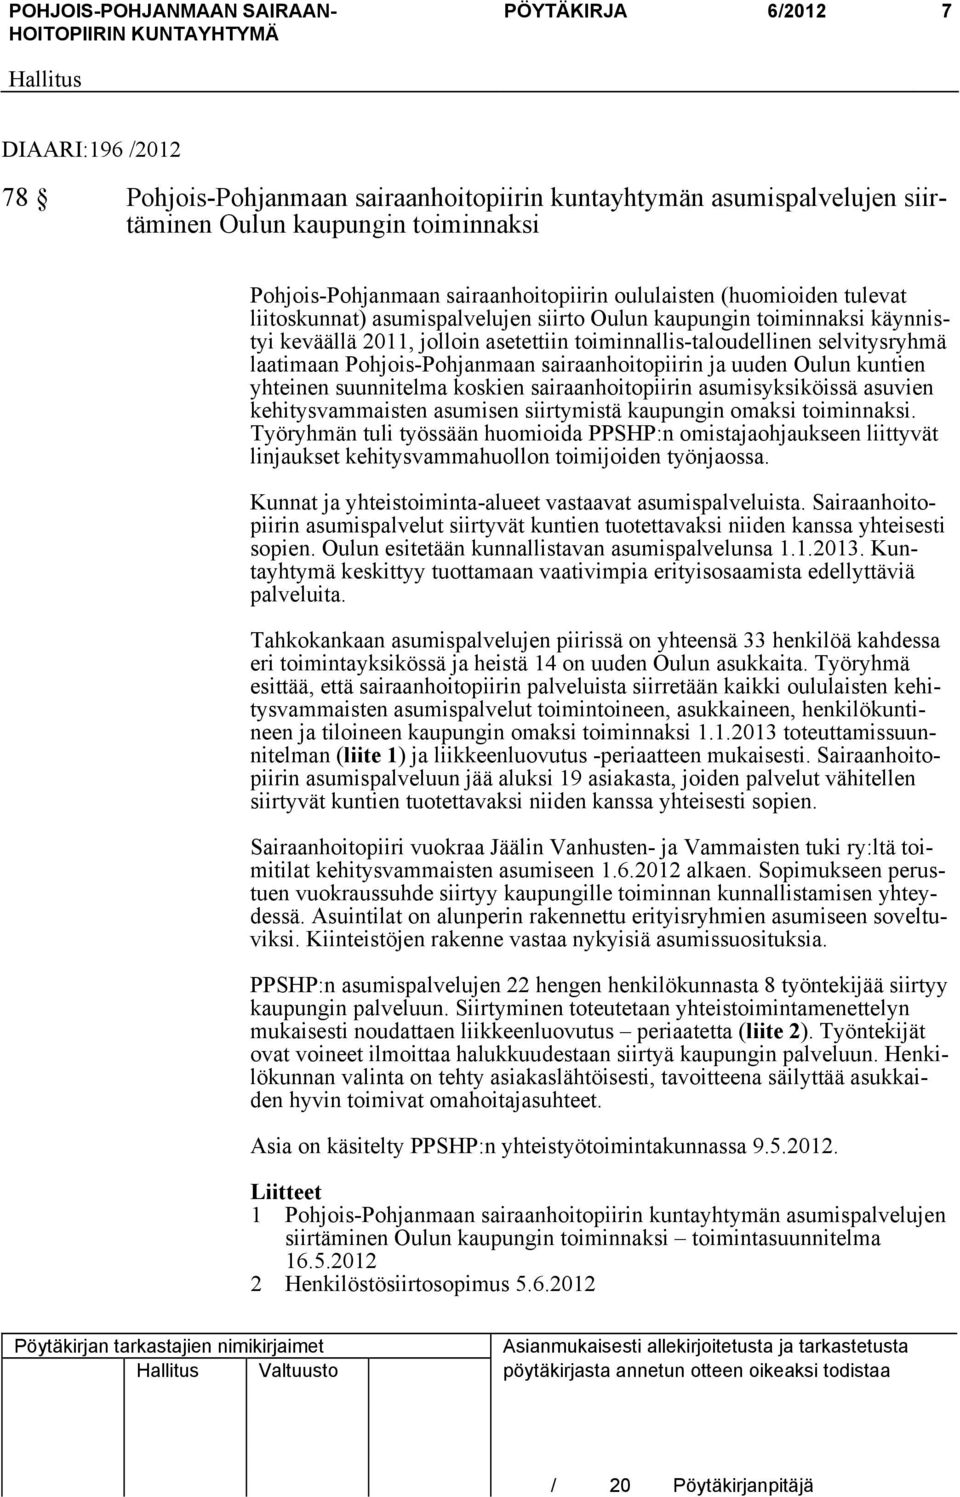 Pohjois-Pohjanmaan sairaanhoitopiirin ja uuden Oulun kuntien yhteinen suunnitelma koskien sairaanhoitopiirin asumisyksiköissä asuvien kehitysvammaisten asumisen siirtymistä kaupungin omaksi